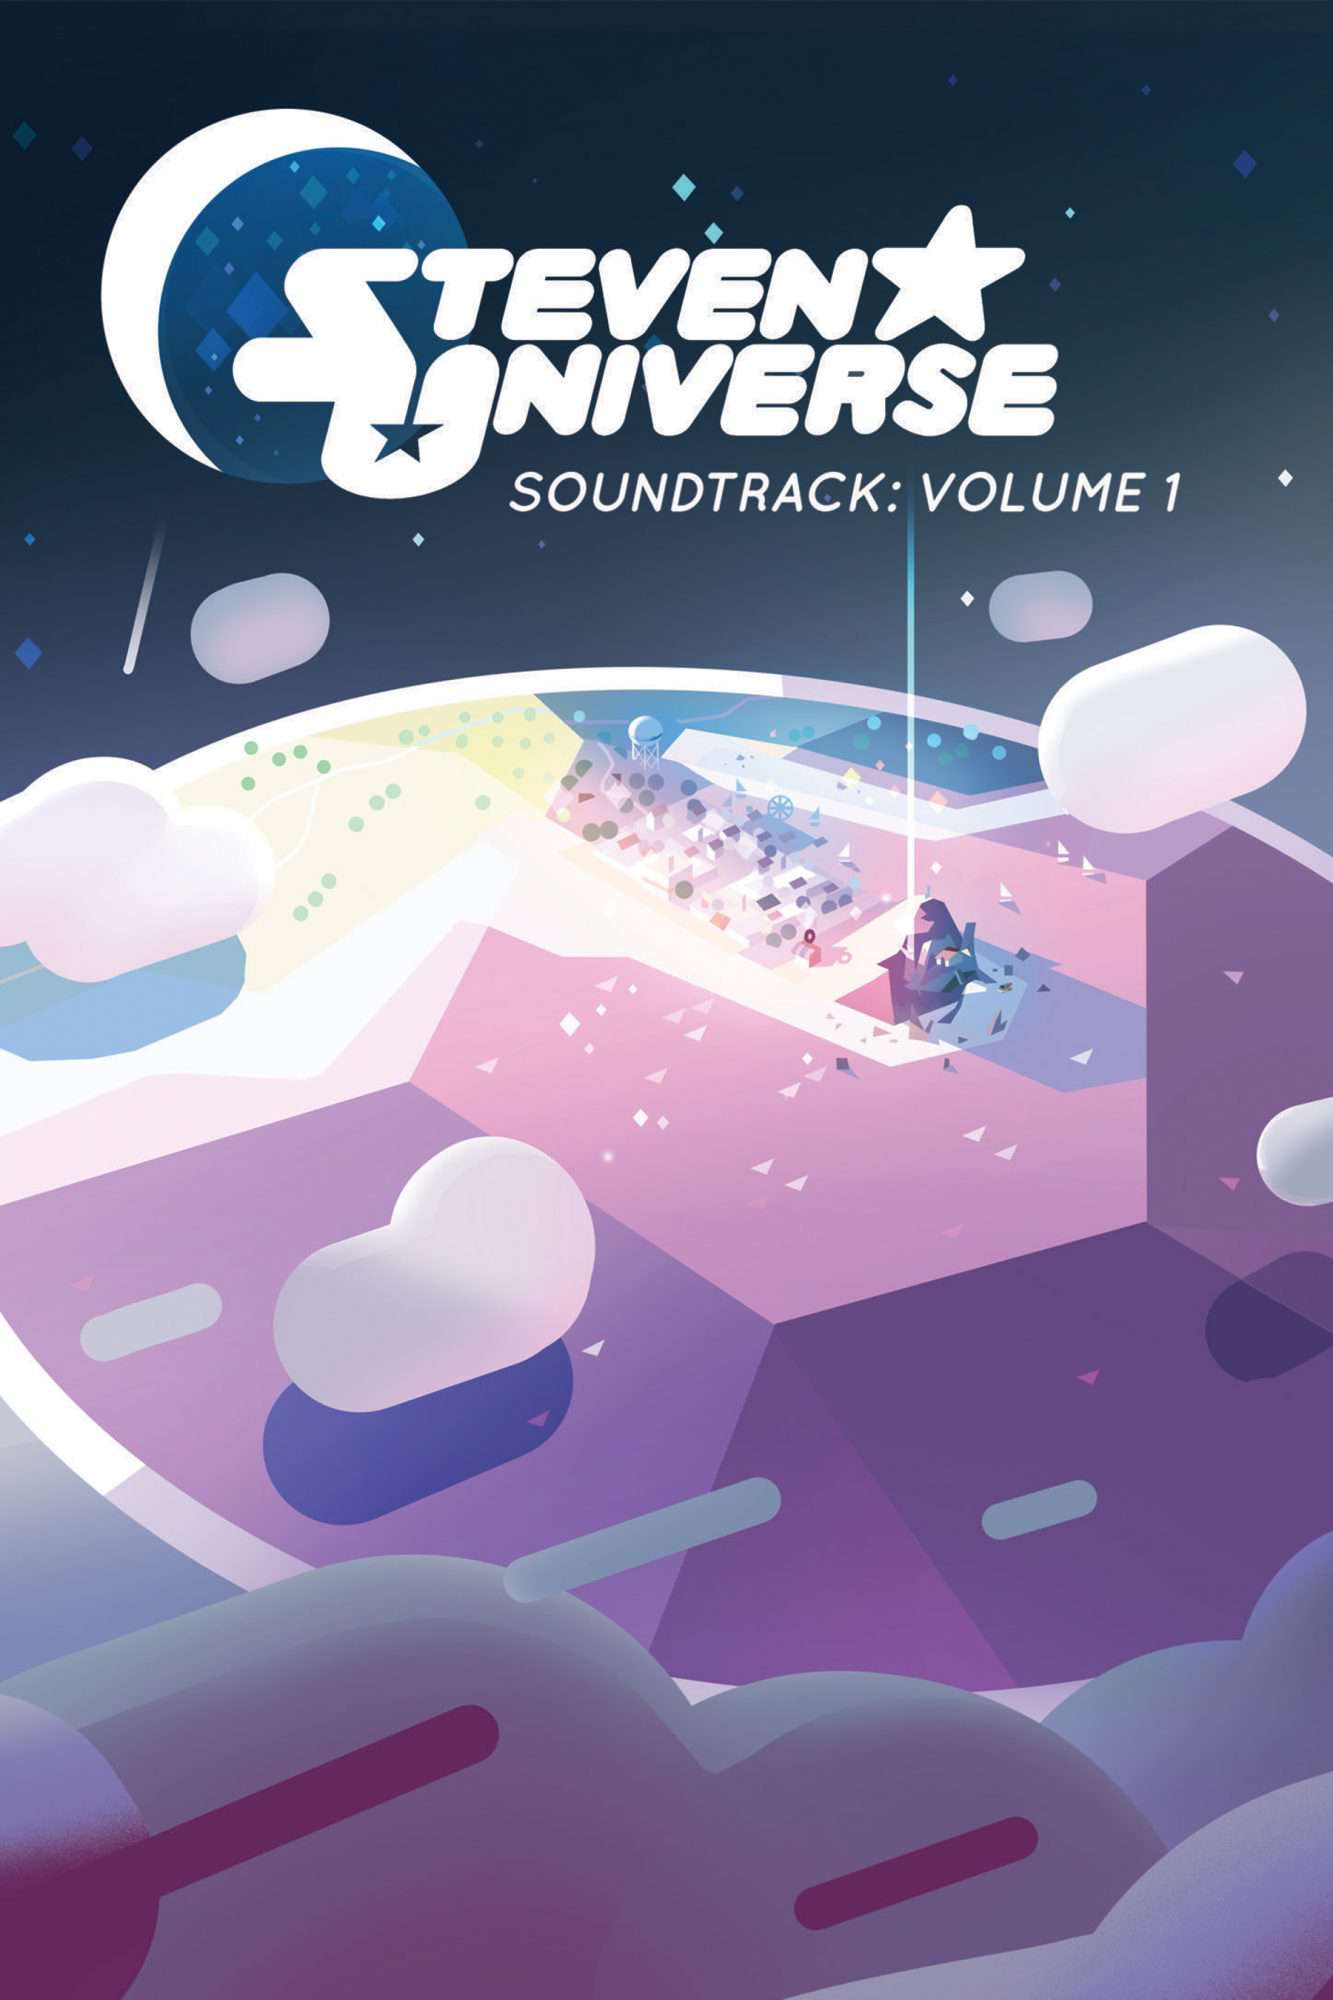 Steven Universe Soundtrack Album In The Works Ew Com